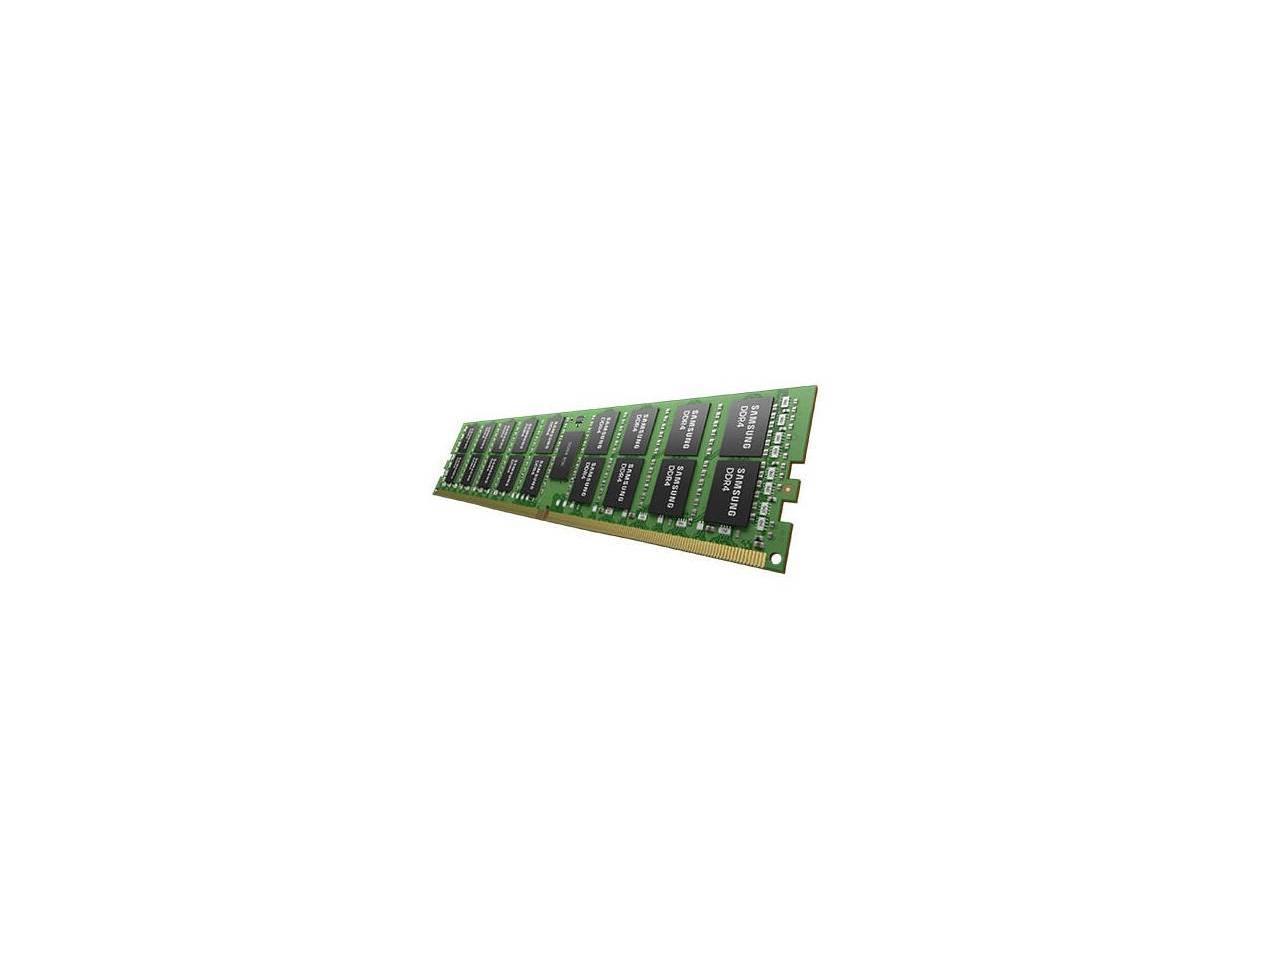 Samsung 32GB 288-Pin DDR4 2666 (PC4 21300) RDIMM 1.2V Server Memory Model M393A4K40BB2-CTD